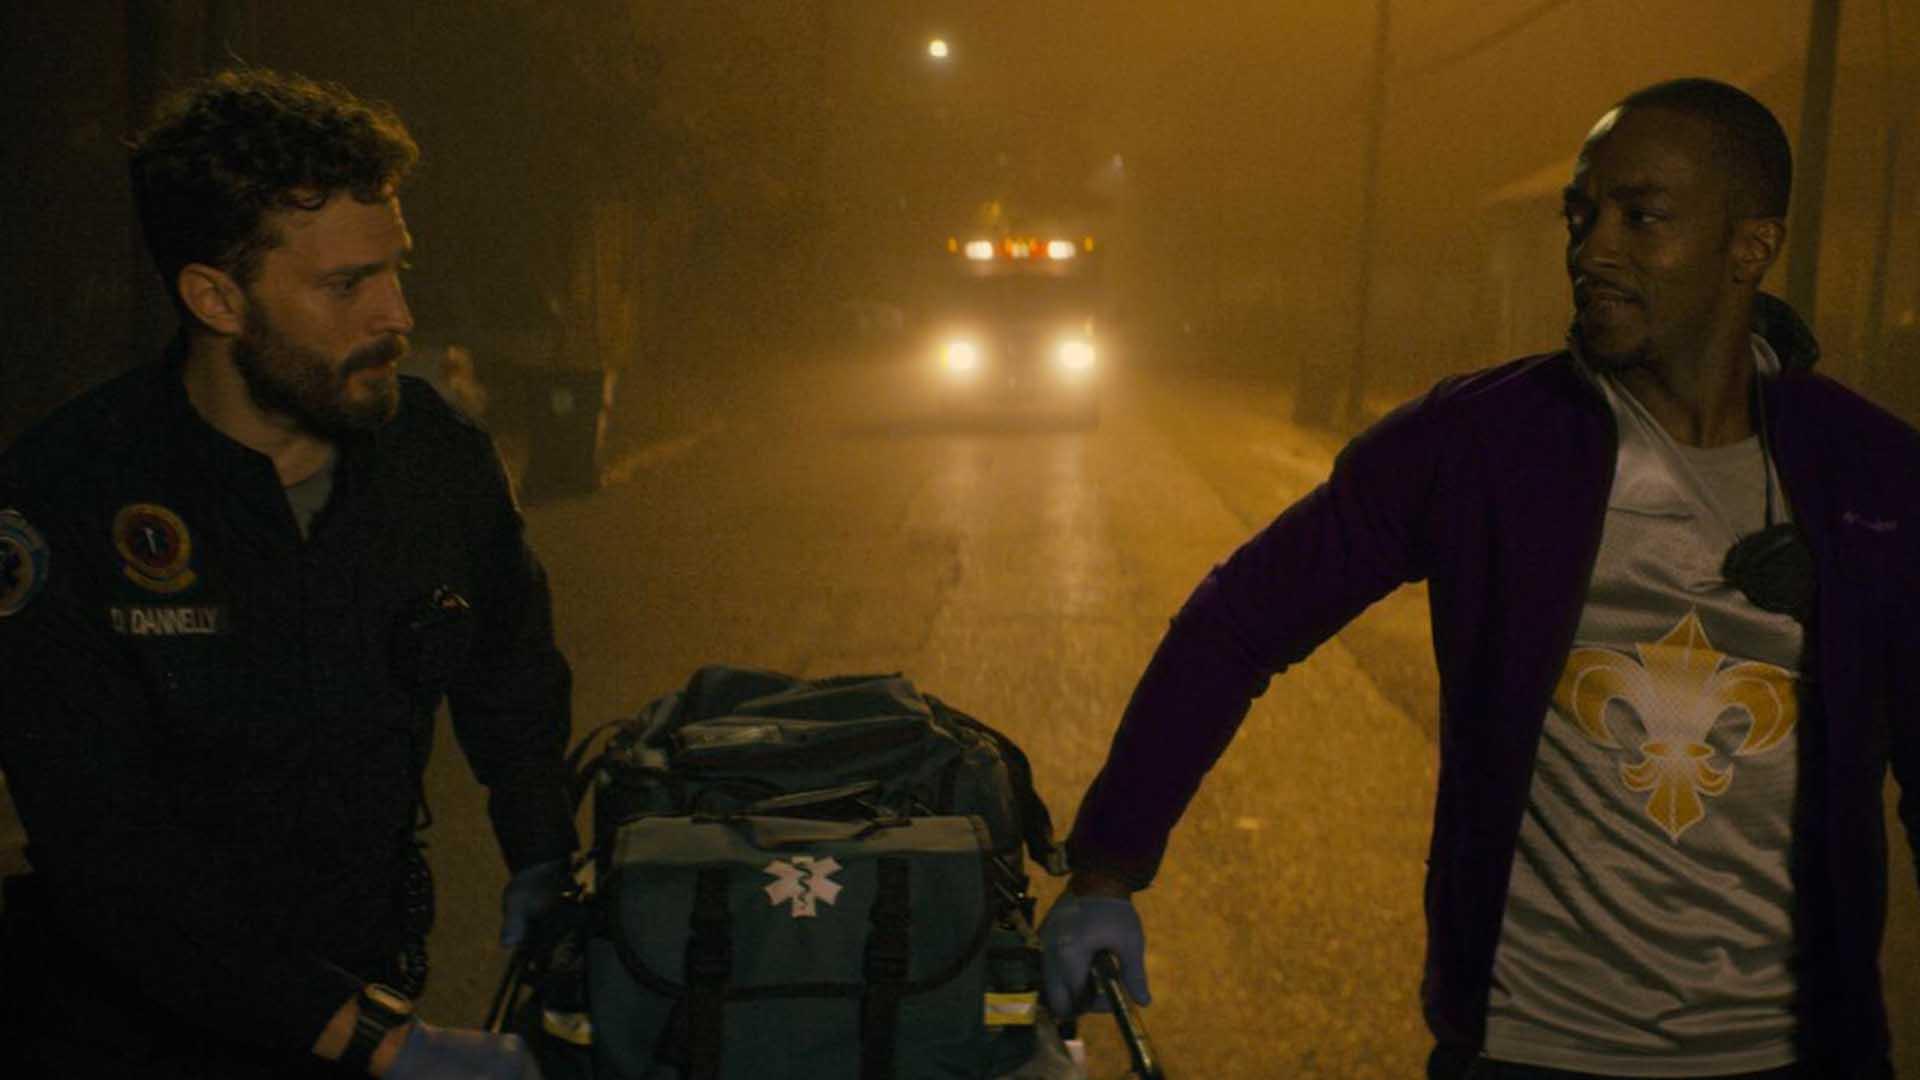 آنتونی مک کی در نقش استیو و جیمی درنان در نقش دنی در فیلم synchronic